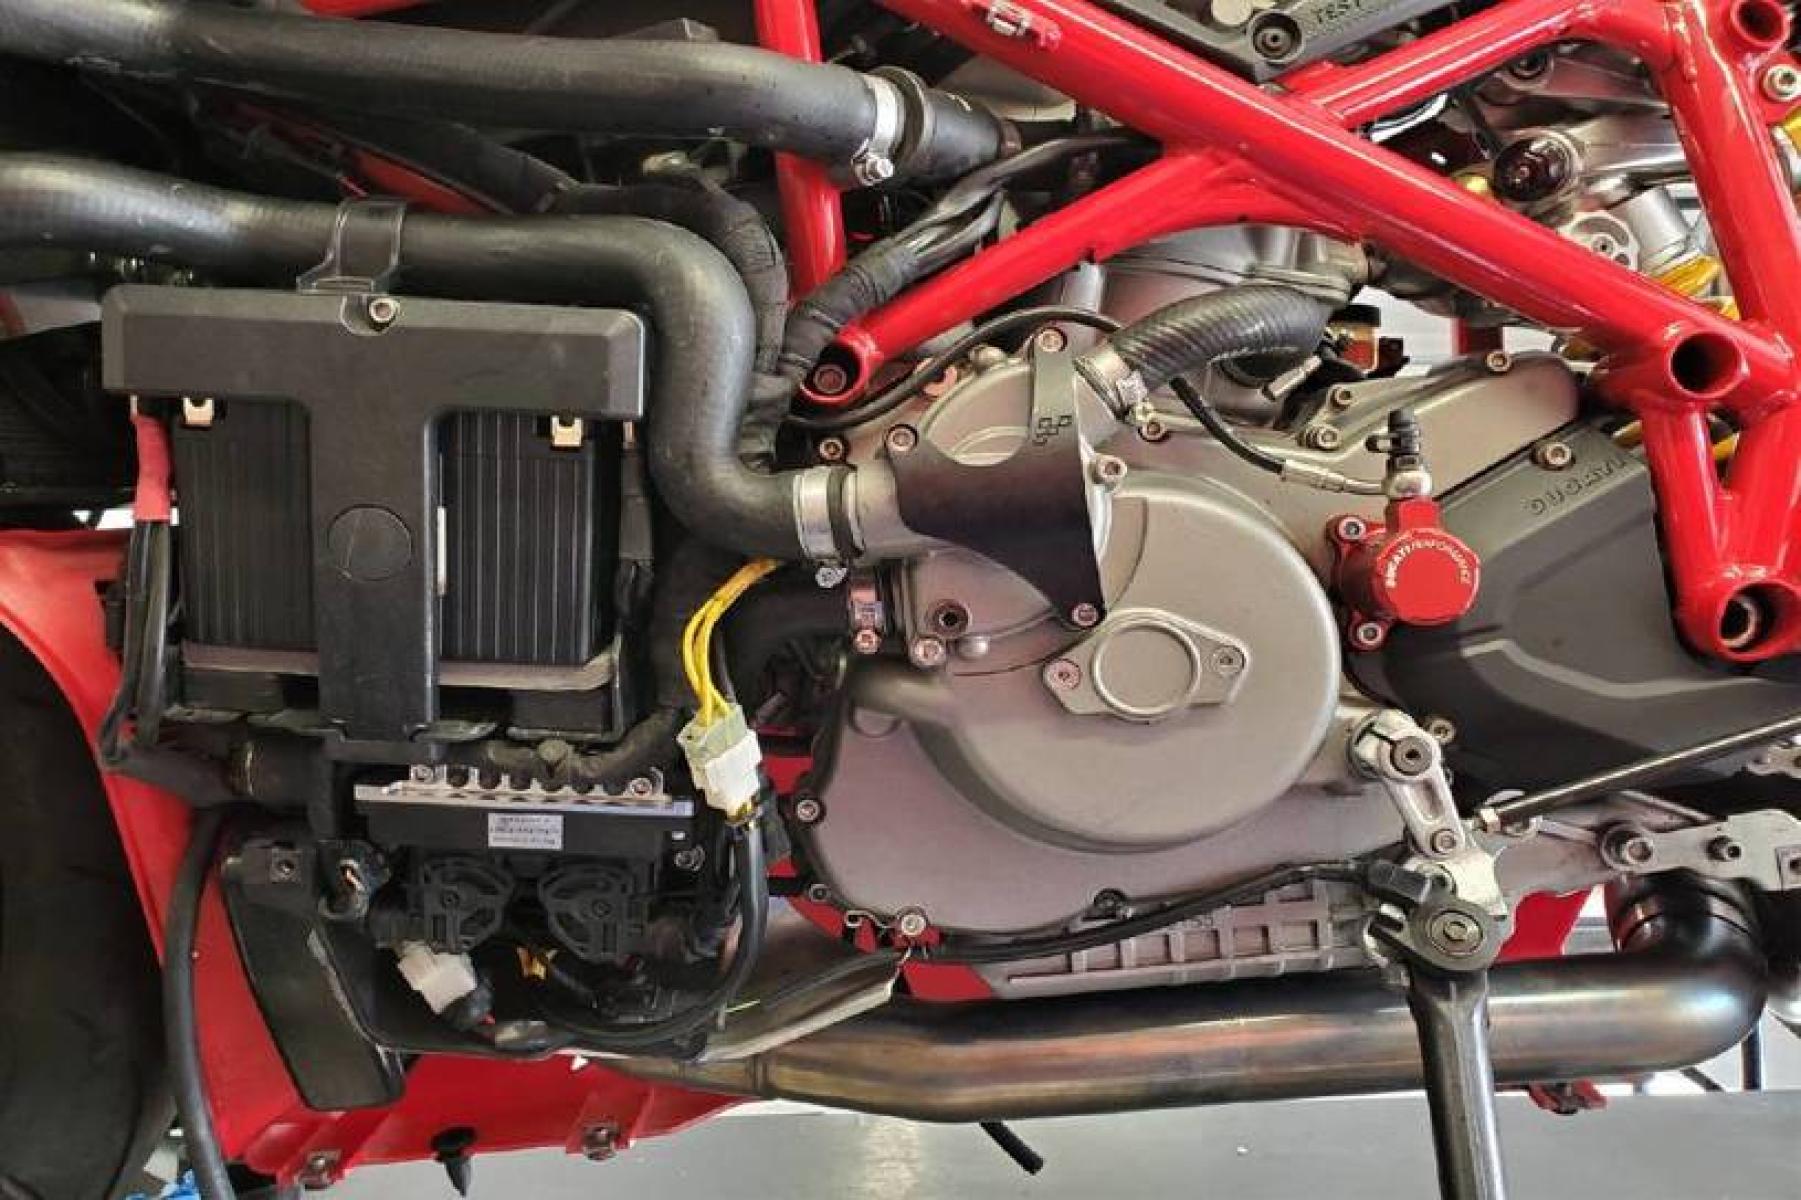 2008 Ducati 1099 S S (ZDM1XBEW18B) with an 1,098 cc L twin engine, Six-Speed Dry Clutch transmission, located at 3160 South Valley View Blvd, Las Vegas, NV, 89146, (888) 750-6845, 36.132458, -115.190247 - b64:VGhlIER1Y2F0aSAxMDk4UyBib2FzdHMgc29tZSBnb3JnZW91cyBib2R5d29yayBhbmQgc2xpY2sgZGVzaWduIGN1ZXMsIGJ1dCBpdHMgcmVhbCBtYXN0ZXJwaWVjZSBsaWVzIGJlbmVhdGggdGhvc2UgcHJldHR5IHBsYXN0aWMgcGFuZWxzLiBVbmRlcm5lYXRoIGlzIGEgdHVidWxhciBzdGVlbCB0cmVsbGlzIGZyYW1lIG9wdGltaXplZCBmb3Igc3RpZmZuZXNzLCBhbmQgYW4gTC10d2luIGVu - Photo #12